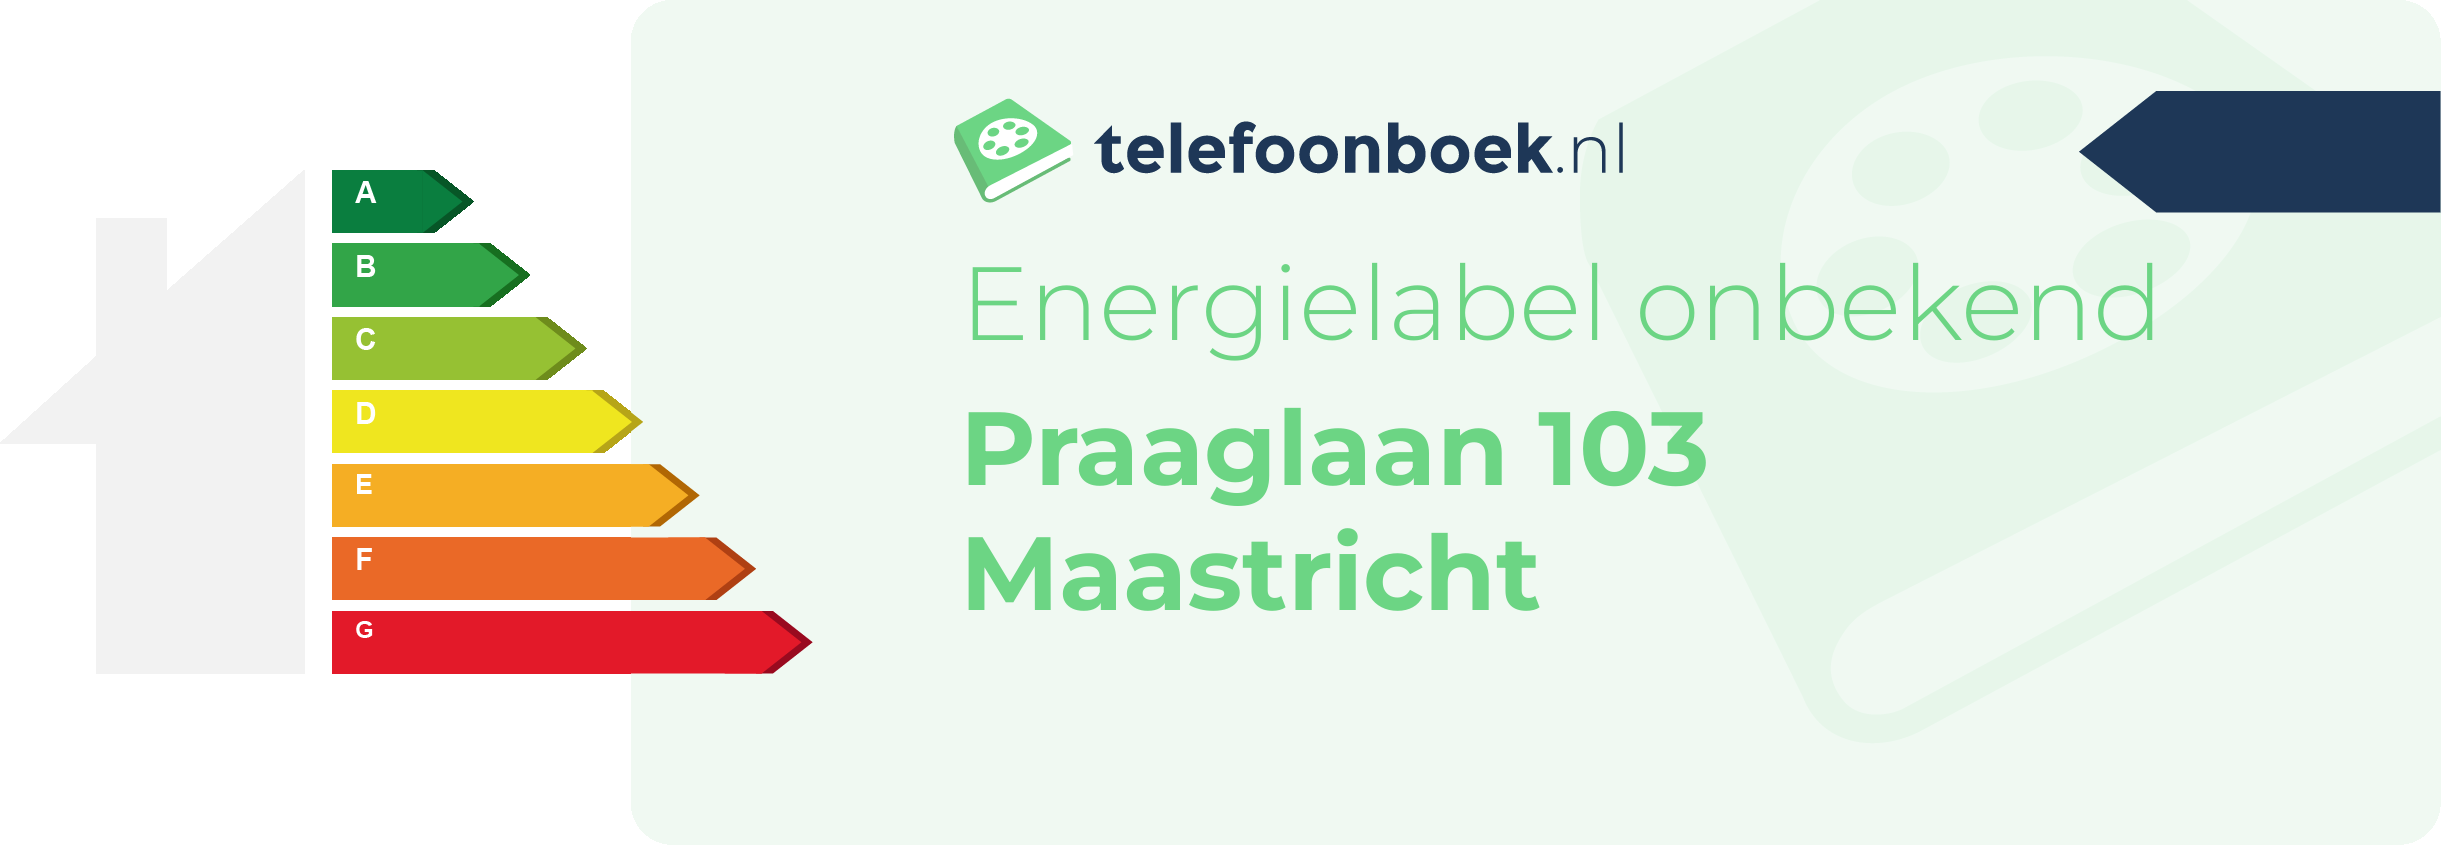 Energielabel Praaglaan 103 Maastricht